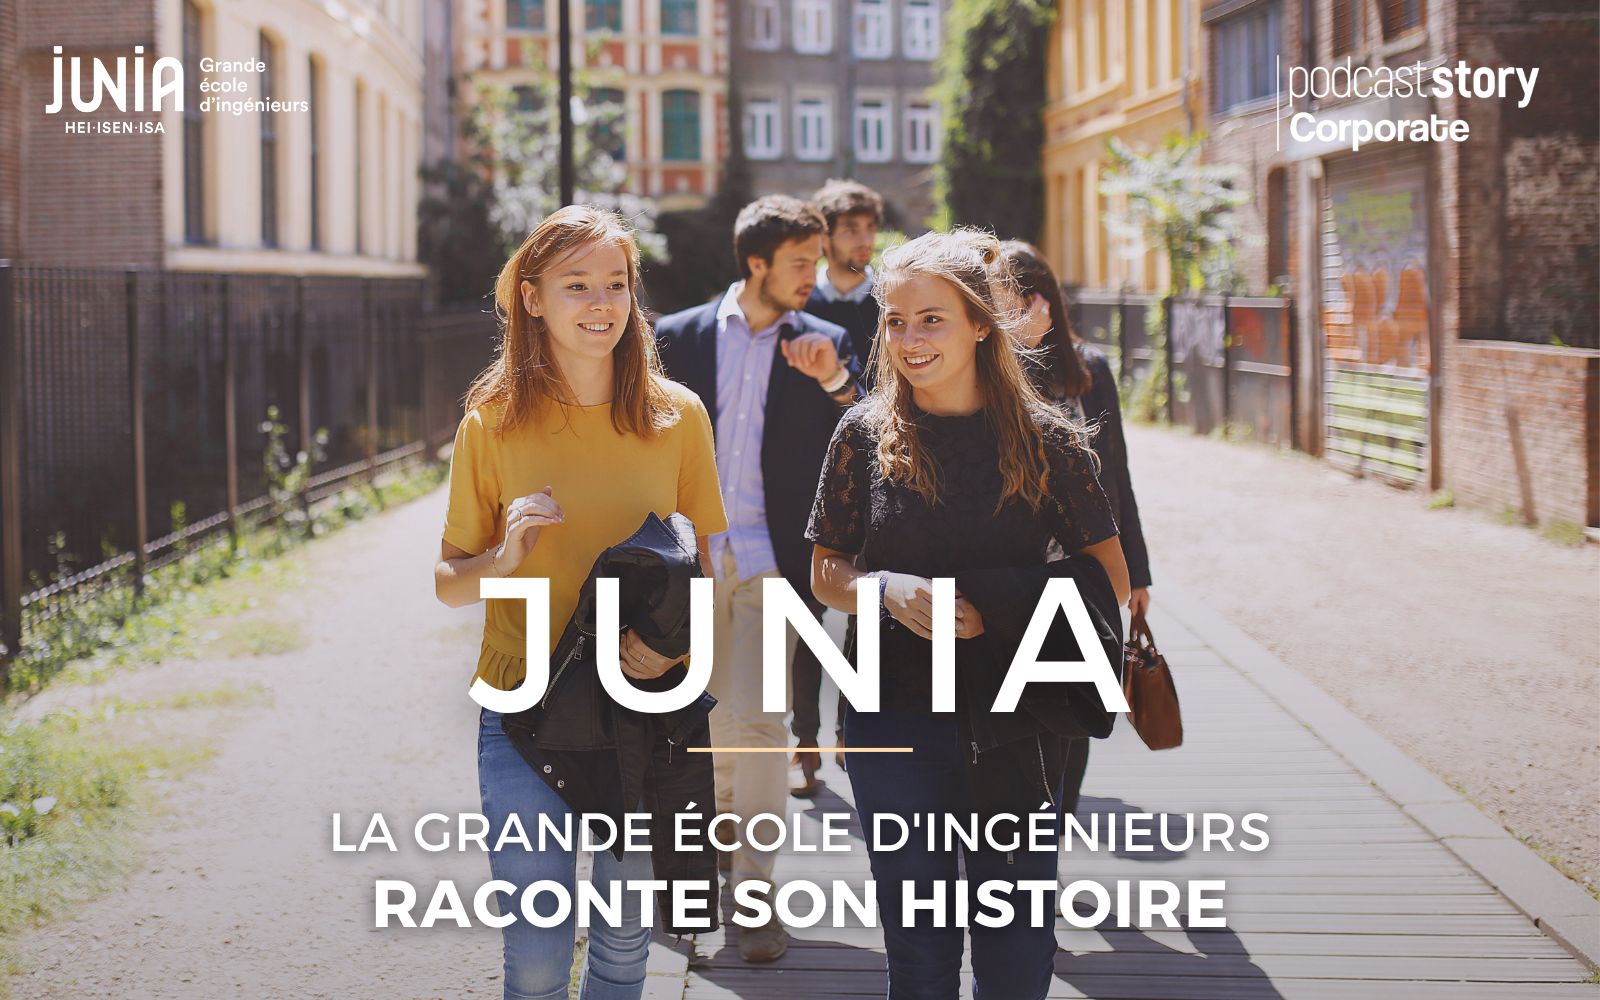 JUNIA – LA GRANDE ÉCOLE D’INGÉNIEURS RACONTE SON HISTOIRE